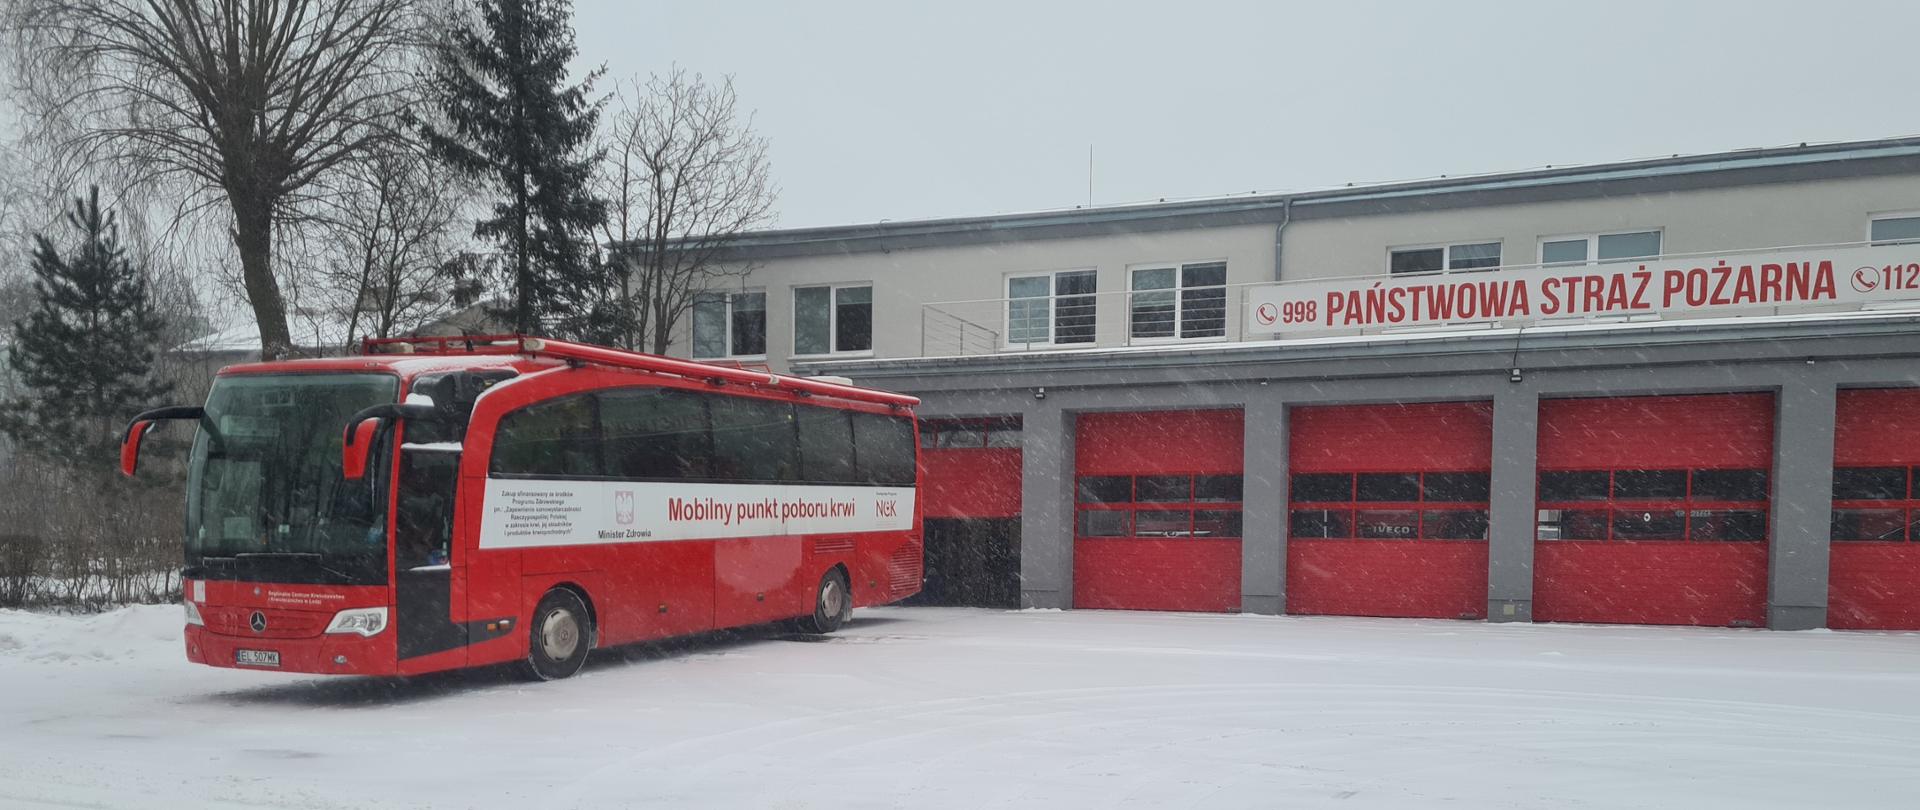 Zdjęcie przedstawia czerwony autokar zwany mobilnym punktem poboru krwi na tle czerwonych bram garażowych Jednostki Ratowniczo - Gaśniczej w Zgierzu